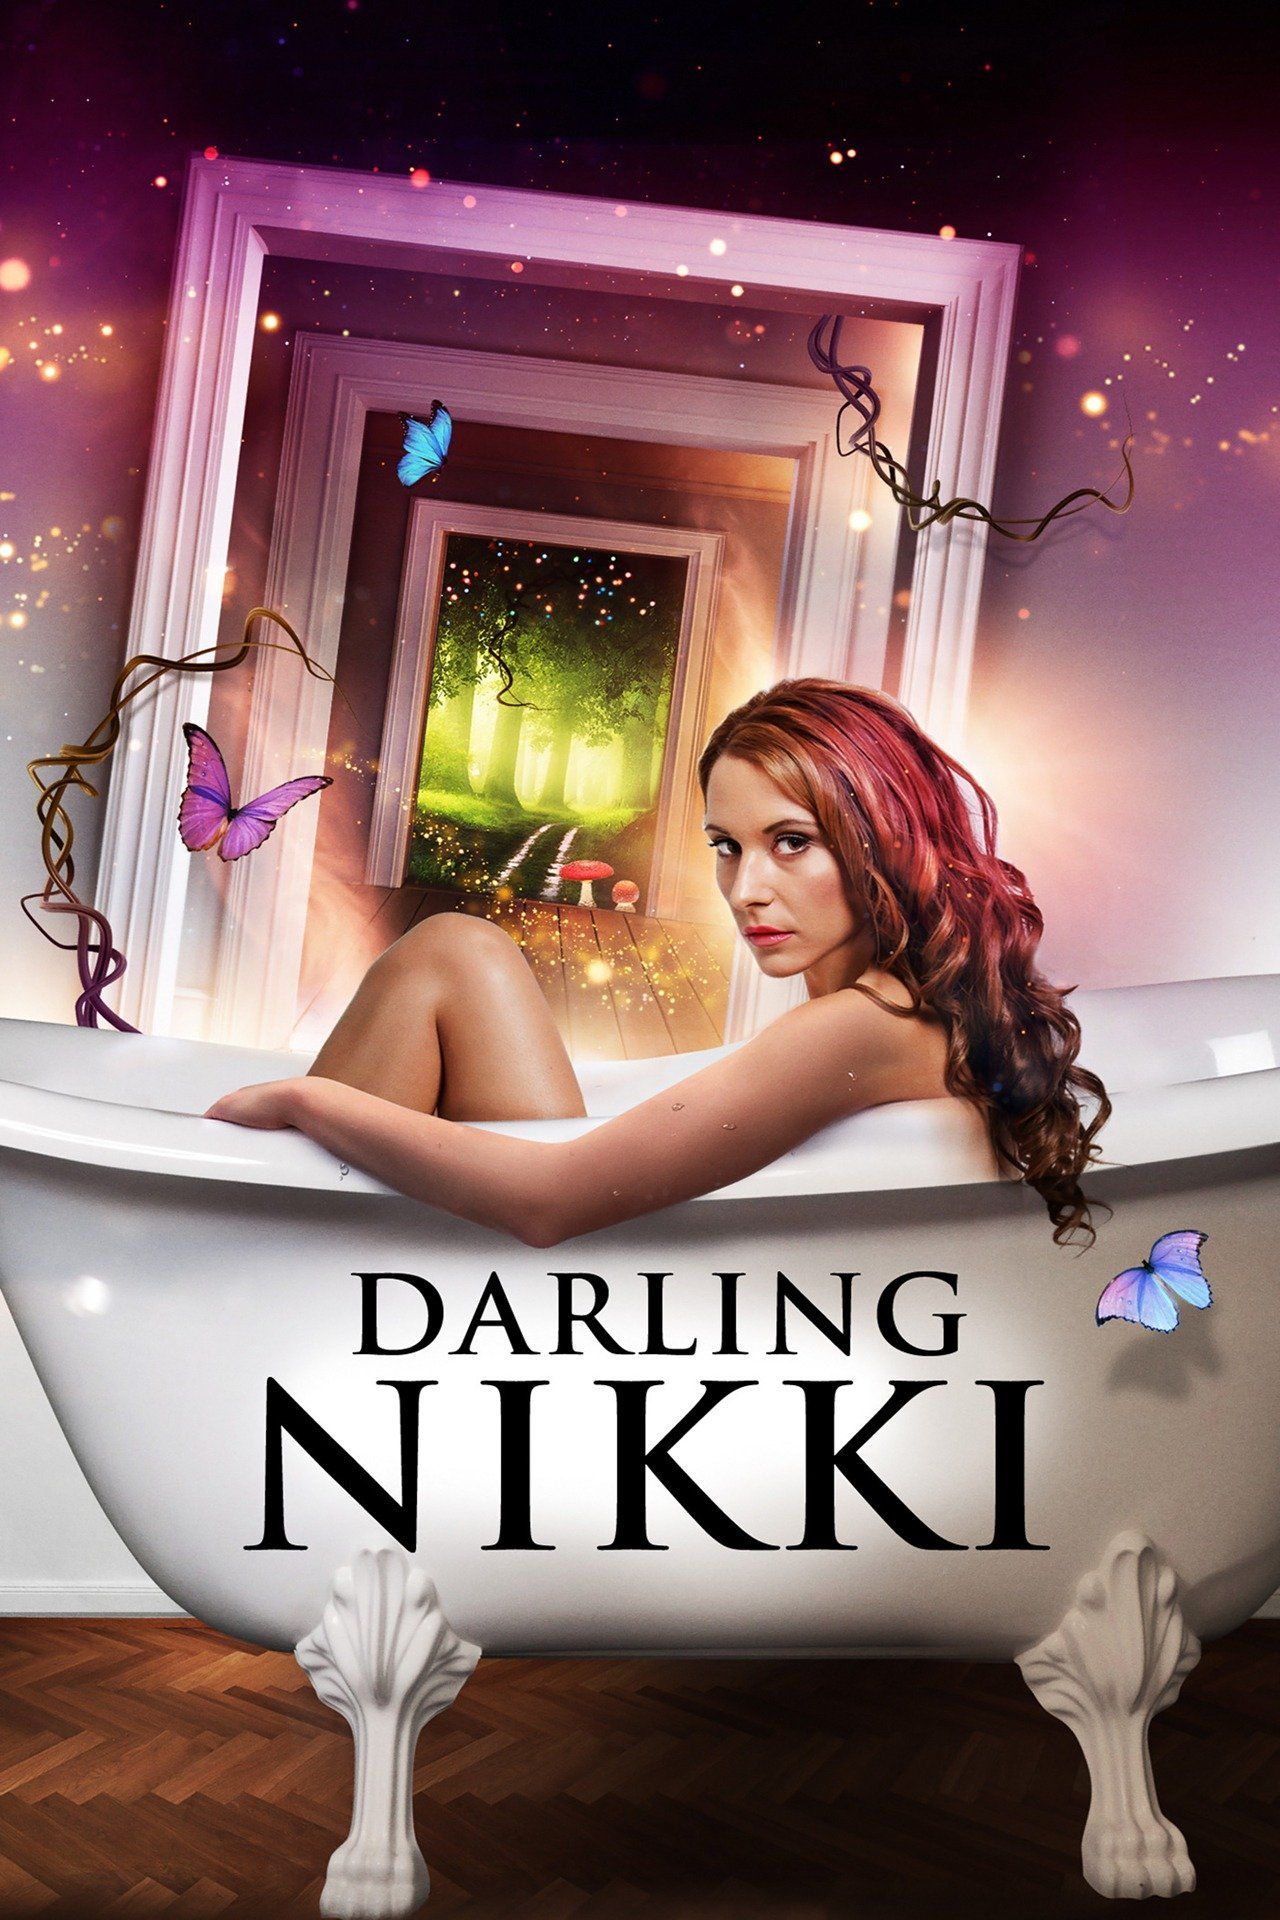 Watch Darling Nikki (2019) Full Movie Free Online - Plex